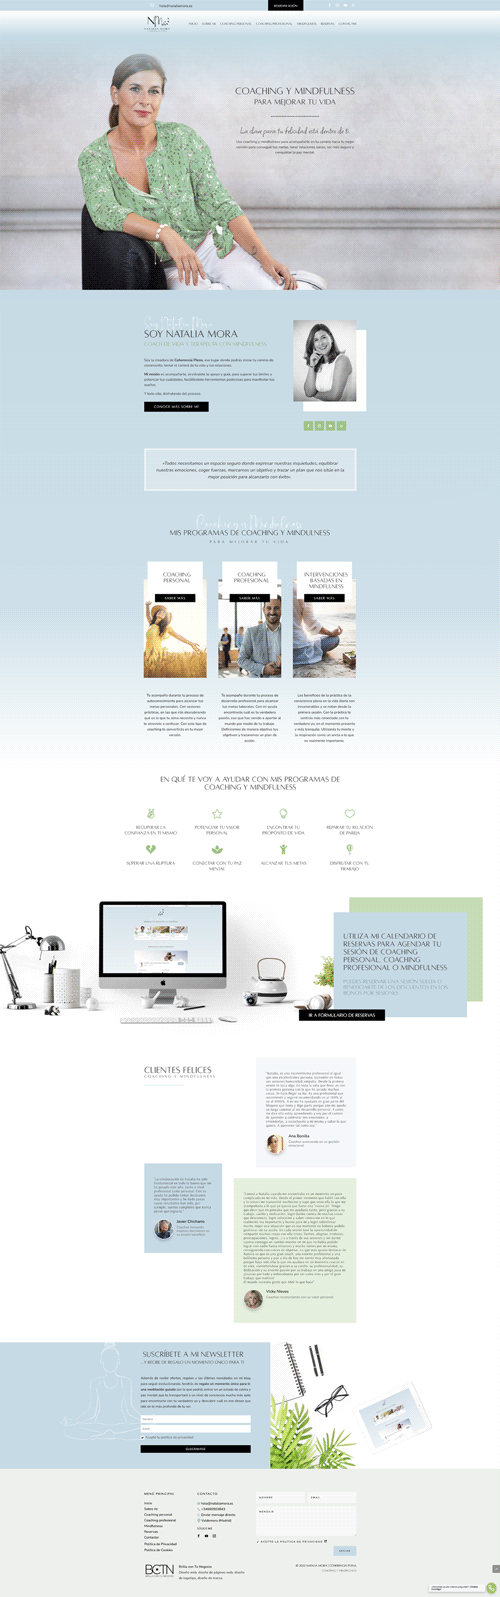 Diseño de página web para Natalia Mora - Coaching y Mindfulness - https://nataliamora.es